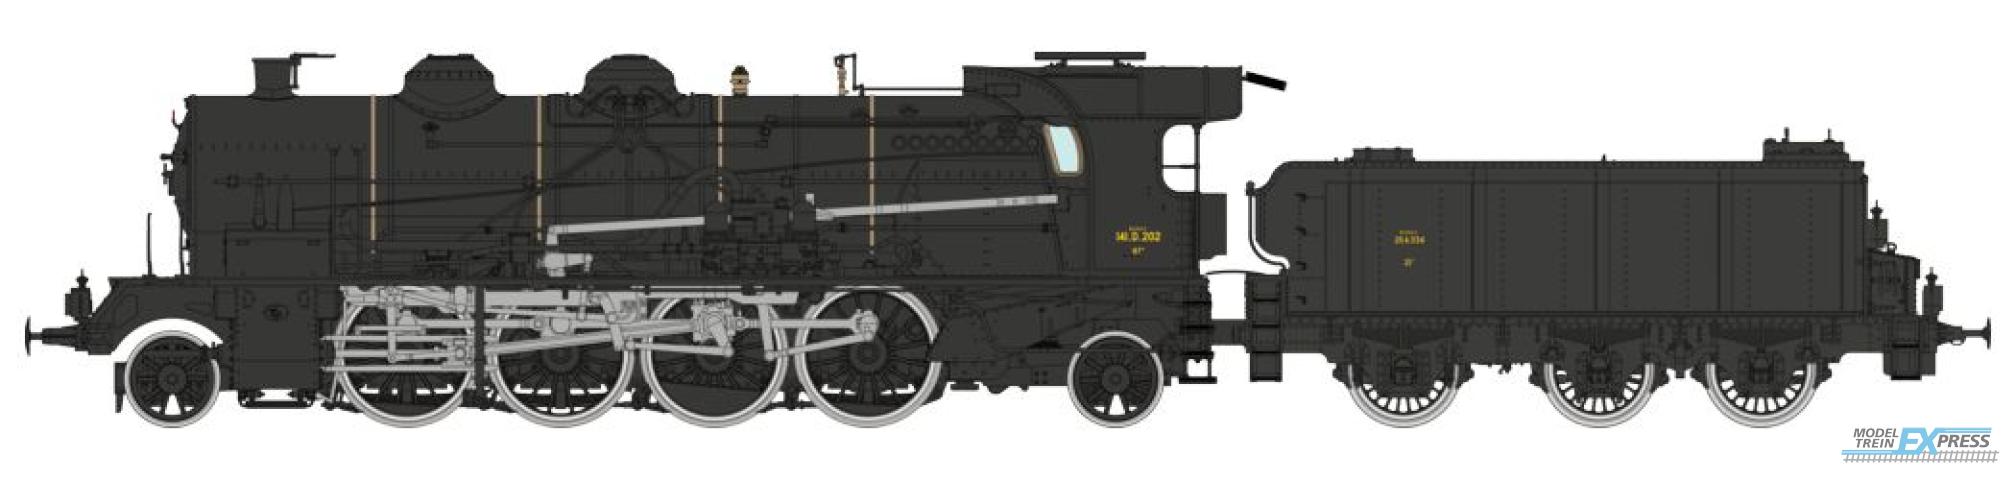 REE models MB-159 141 D 202 + Tender 25 A 334 Black VEYNES SNCF Era III - ANALOG